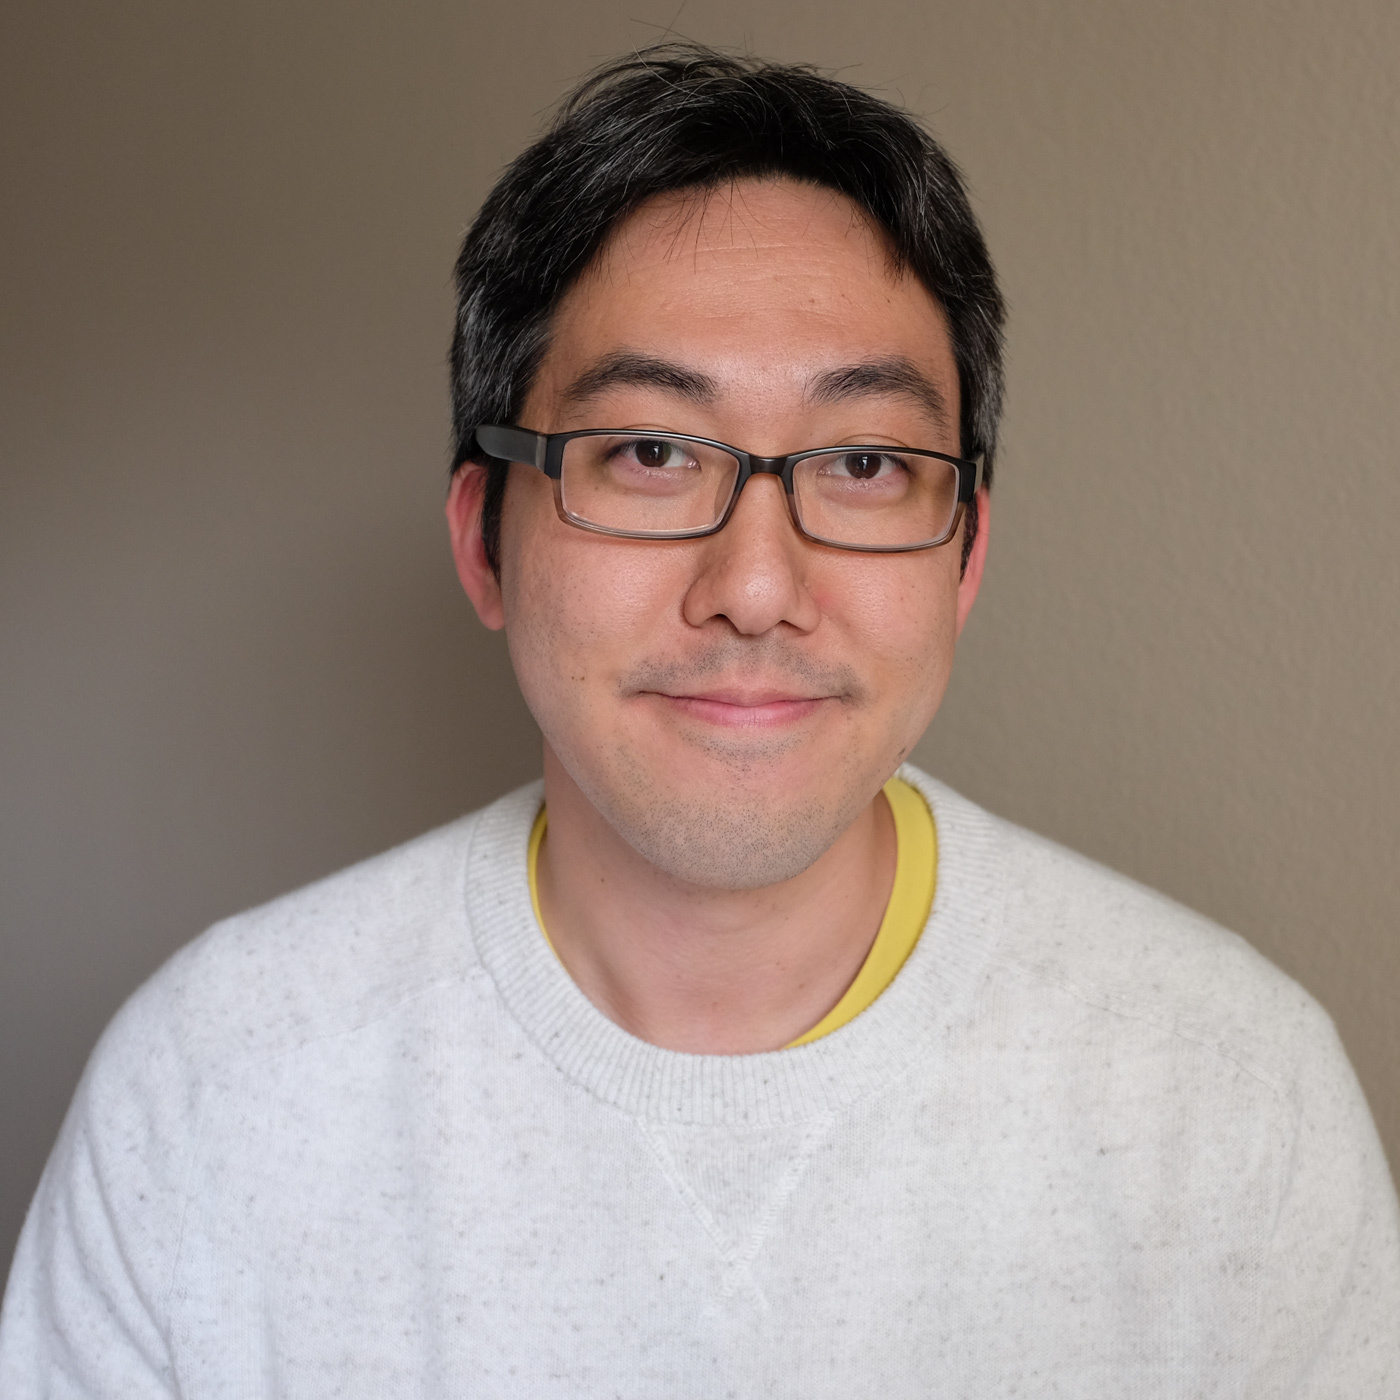 John Saito, UX Writer at Dropbox